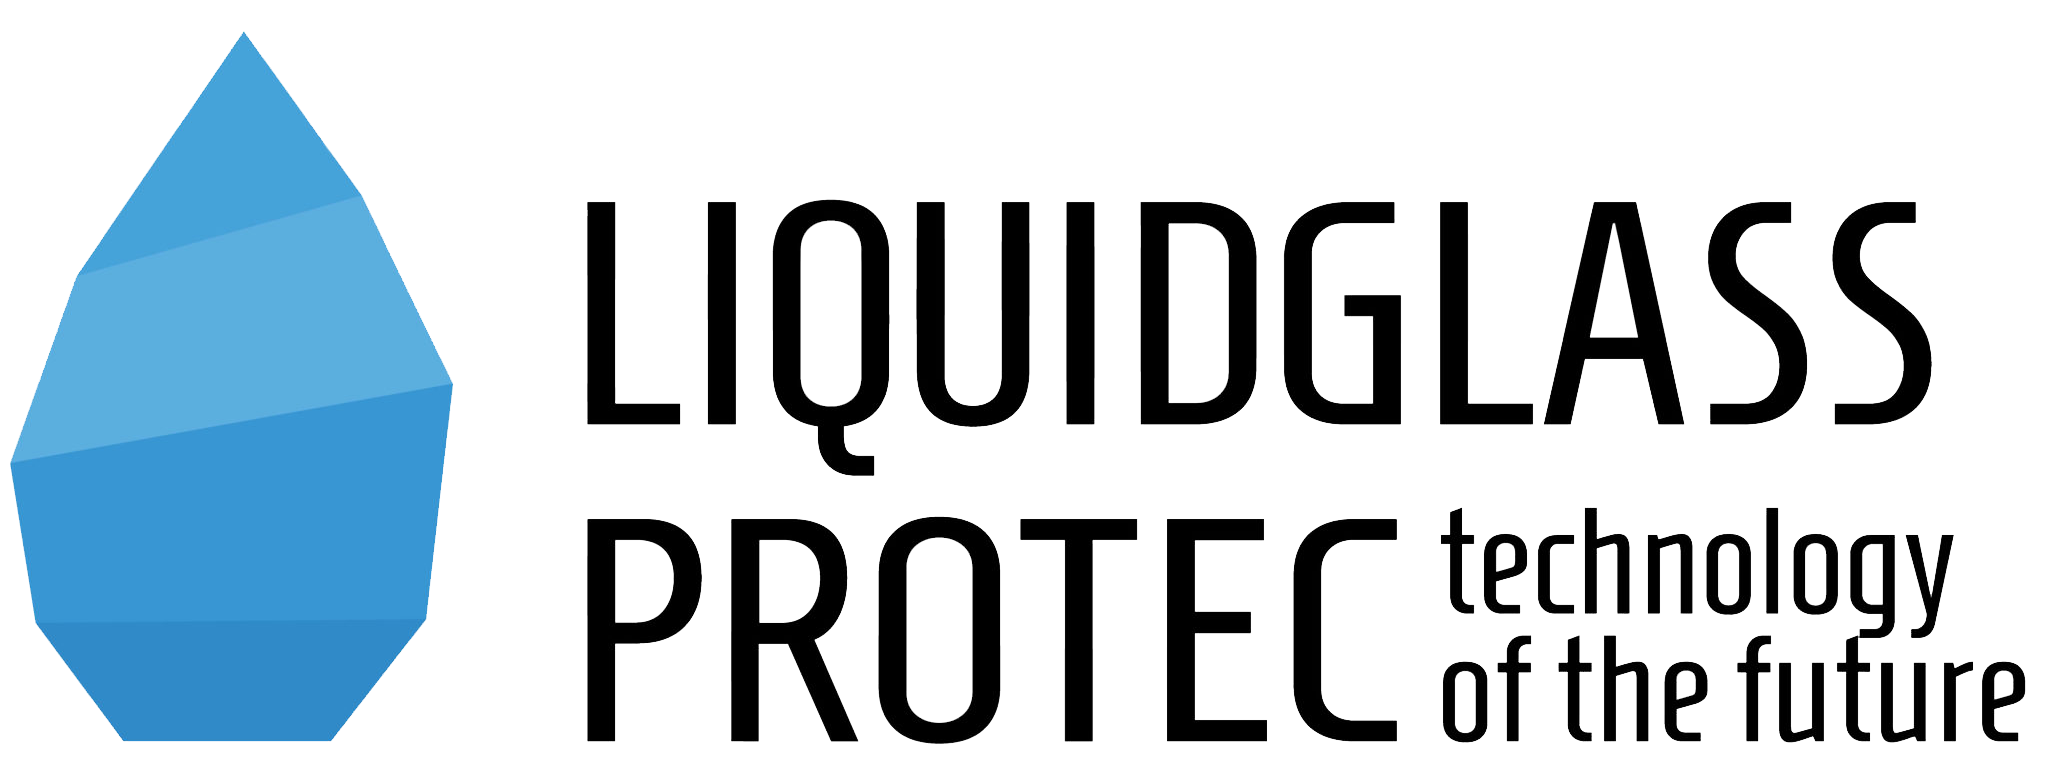 Liquidglass-protec